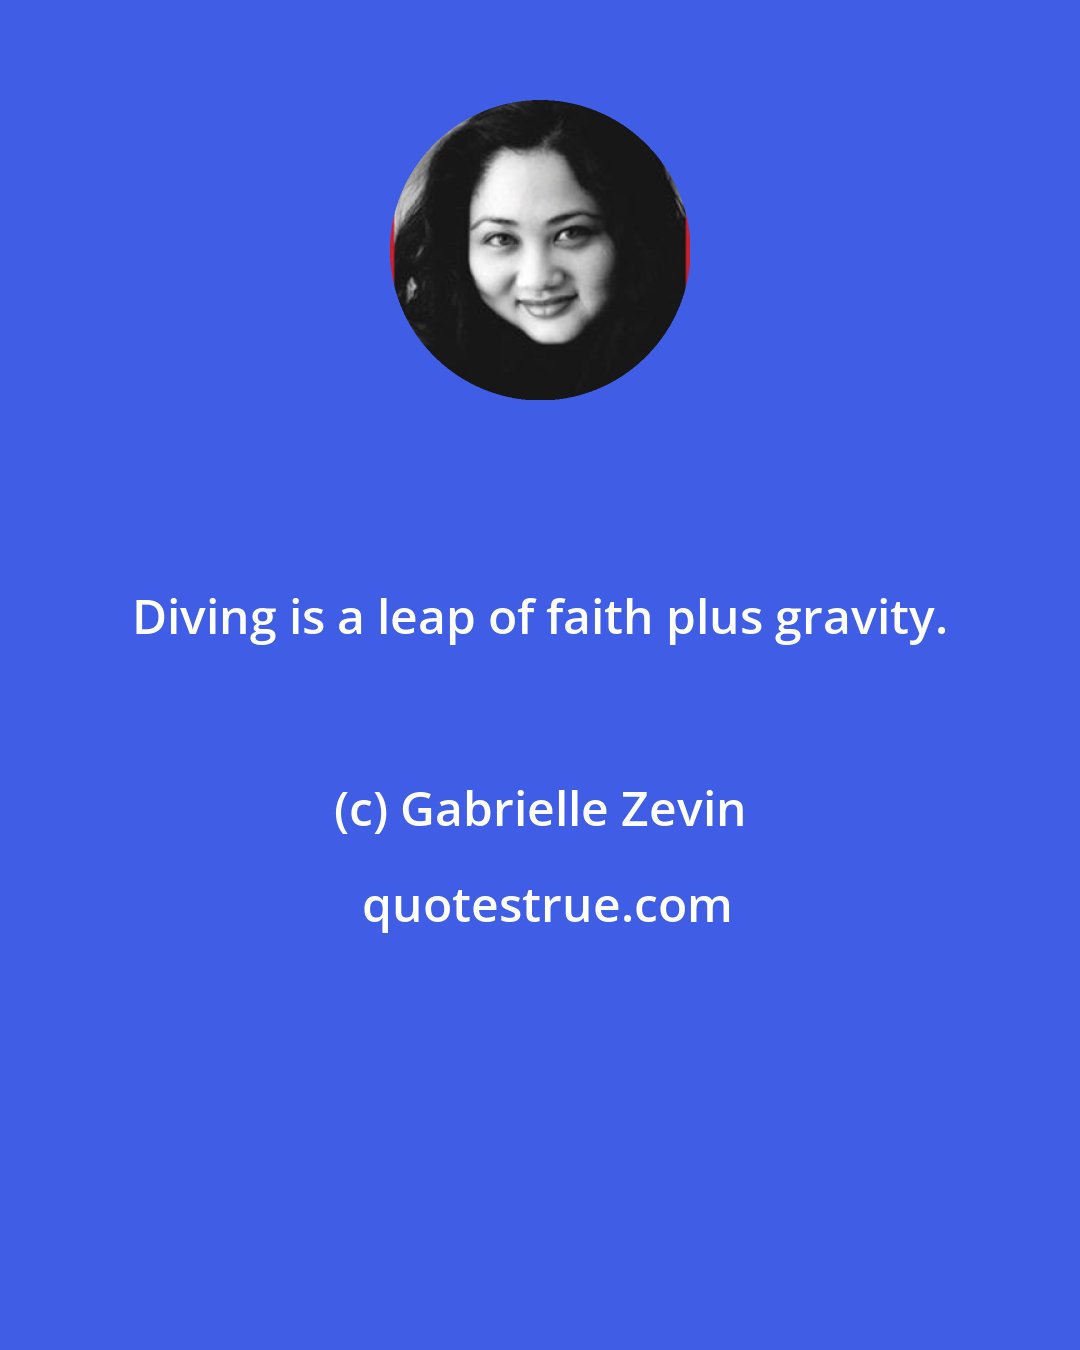 Gabrielle Zevin: Diving is a leap of faith plus gravity.